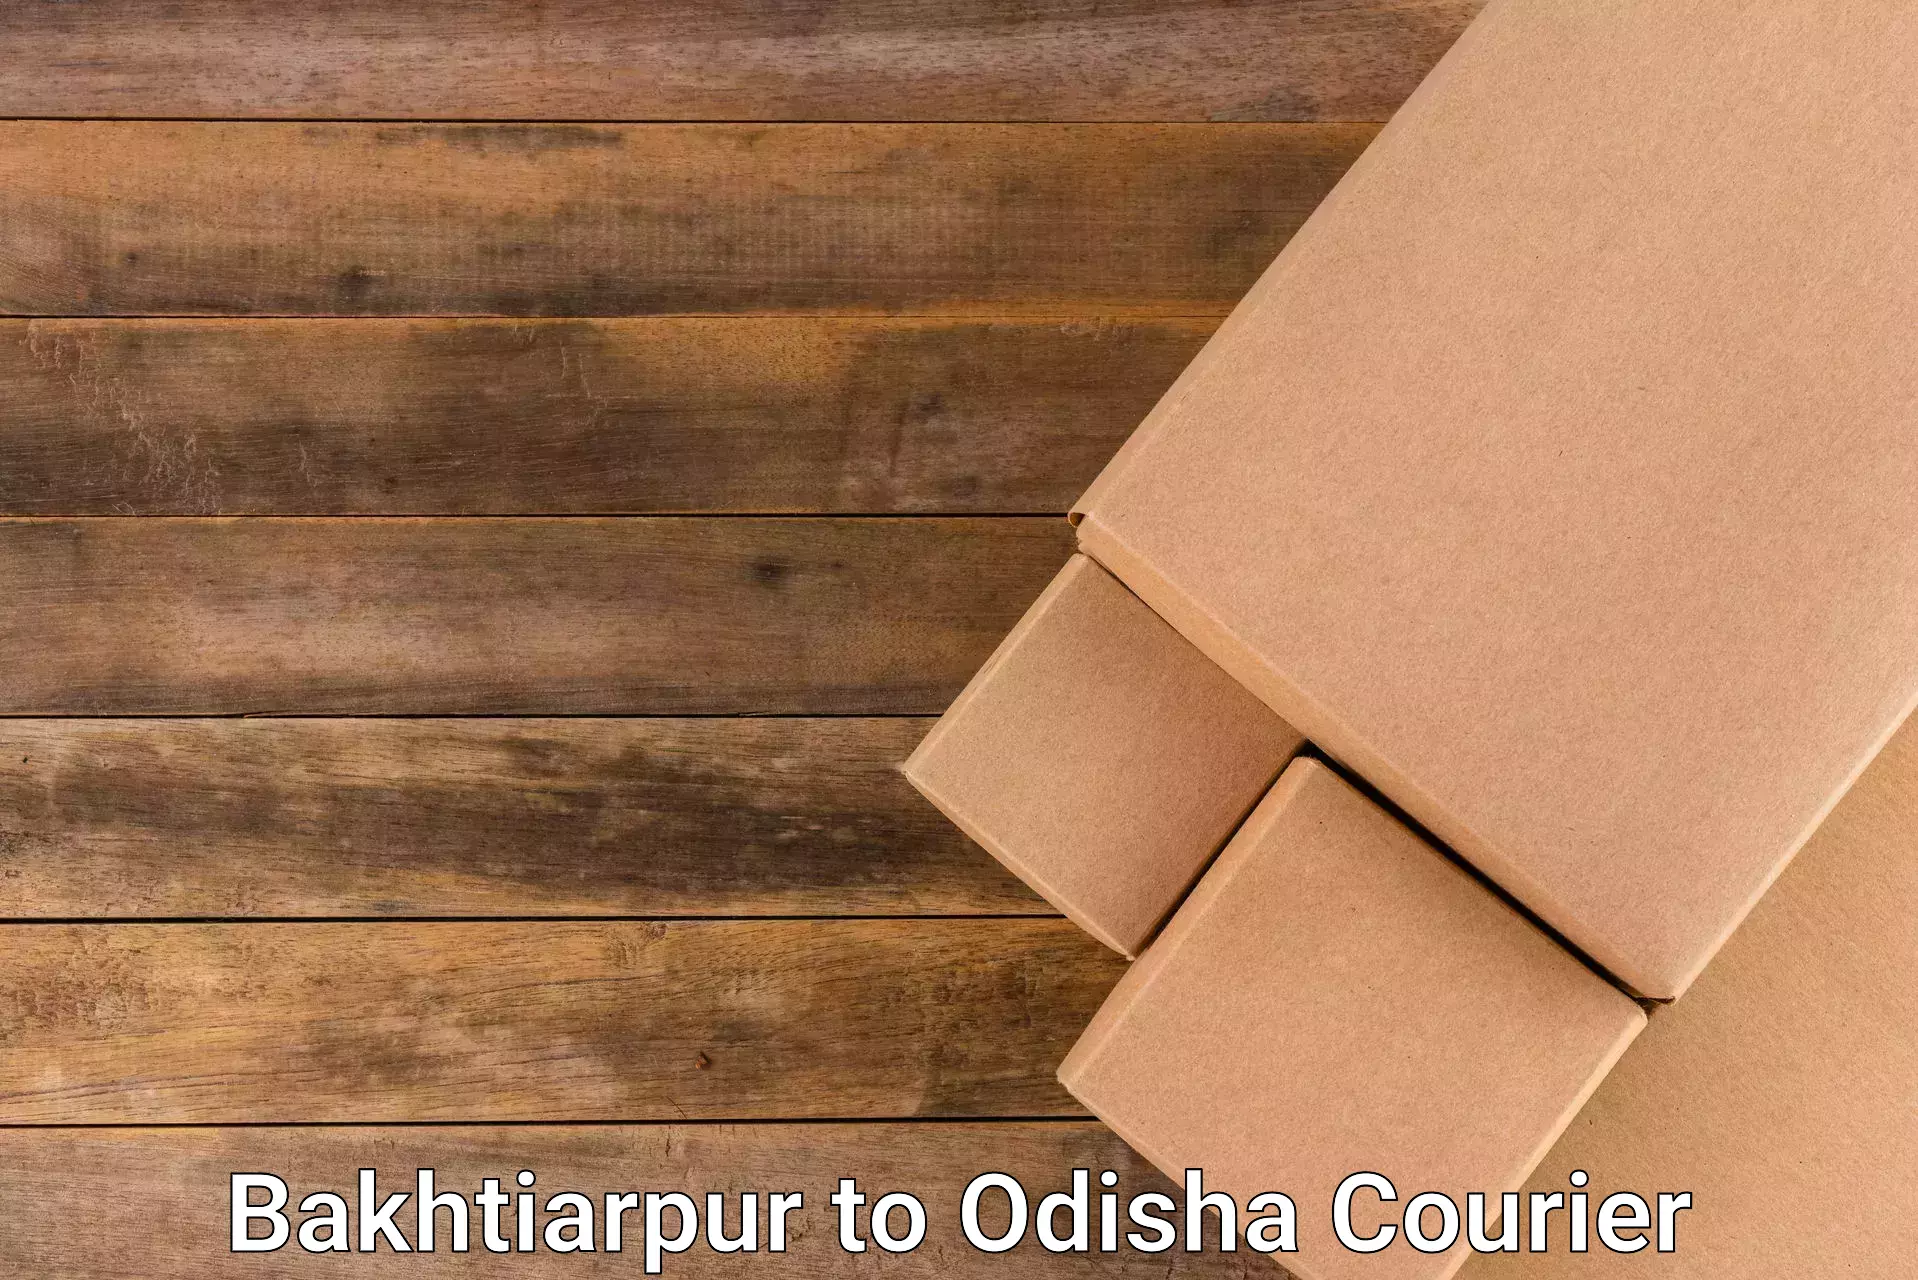 Optimized delivery routes Bakhtiarpur to Dhenkanal